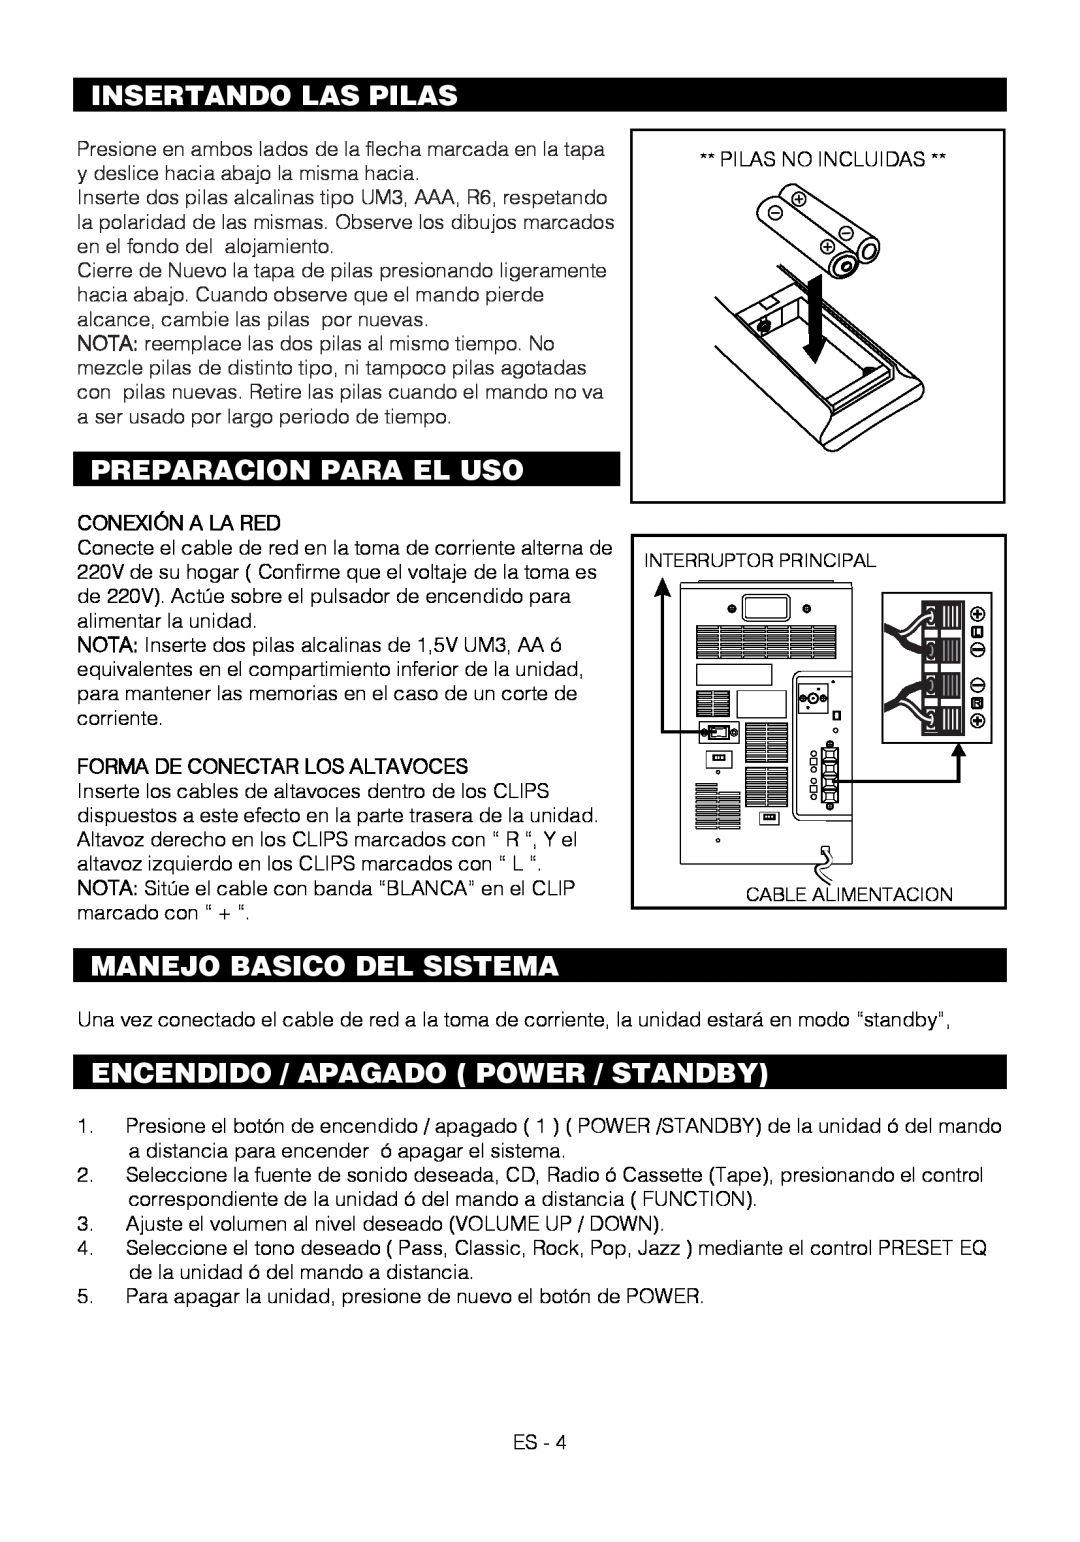 Motorola BSA-1520 Insertando Las Pilas, Preparacion Para El Uso, Manejo Basico Del Sistema, Conexión A La Red 